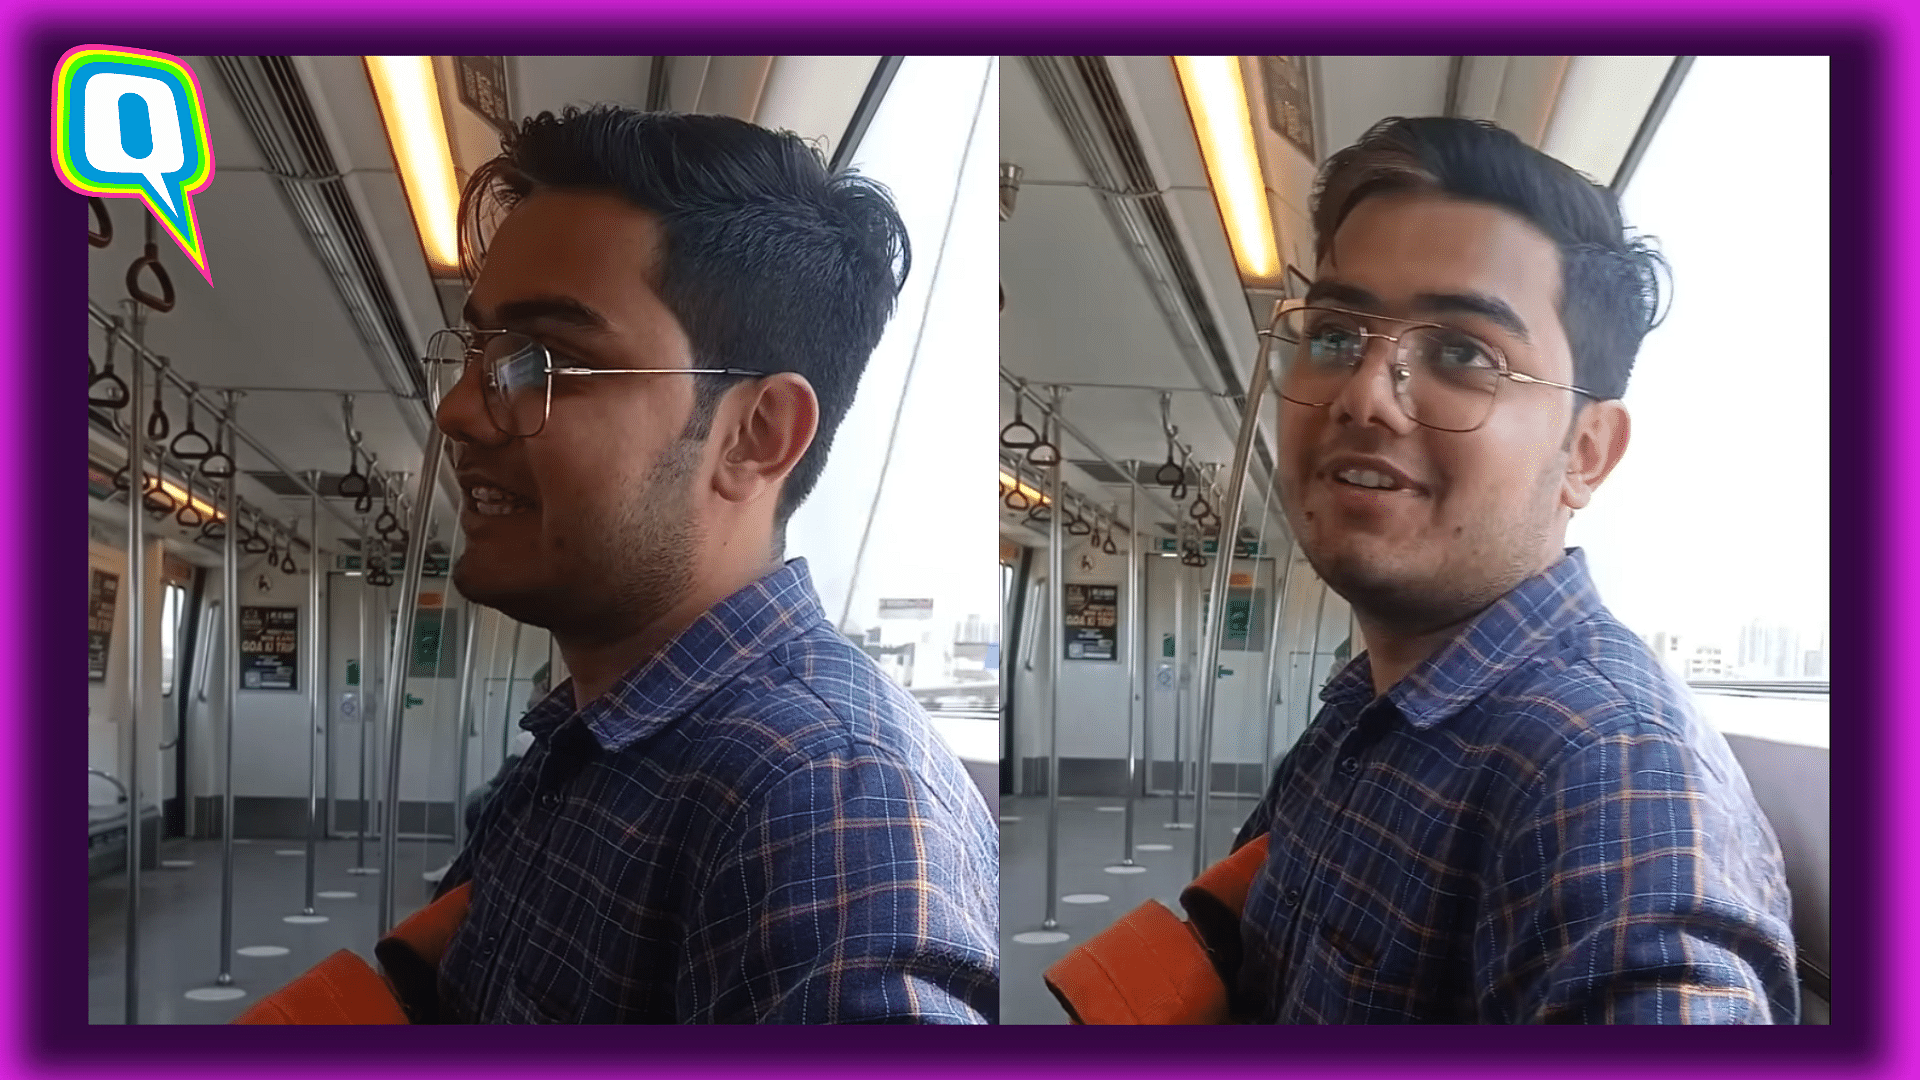 <div class="paragraphs"><p>Krishnansh Sharma aced the Delhi metro announcements</p></div>